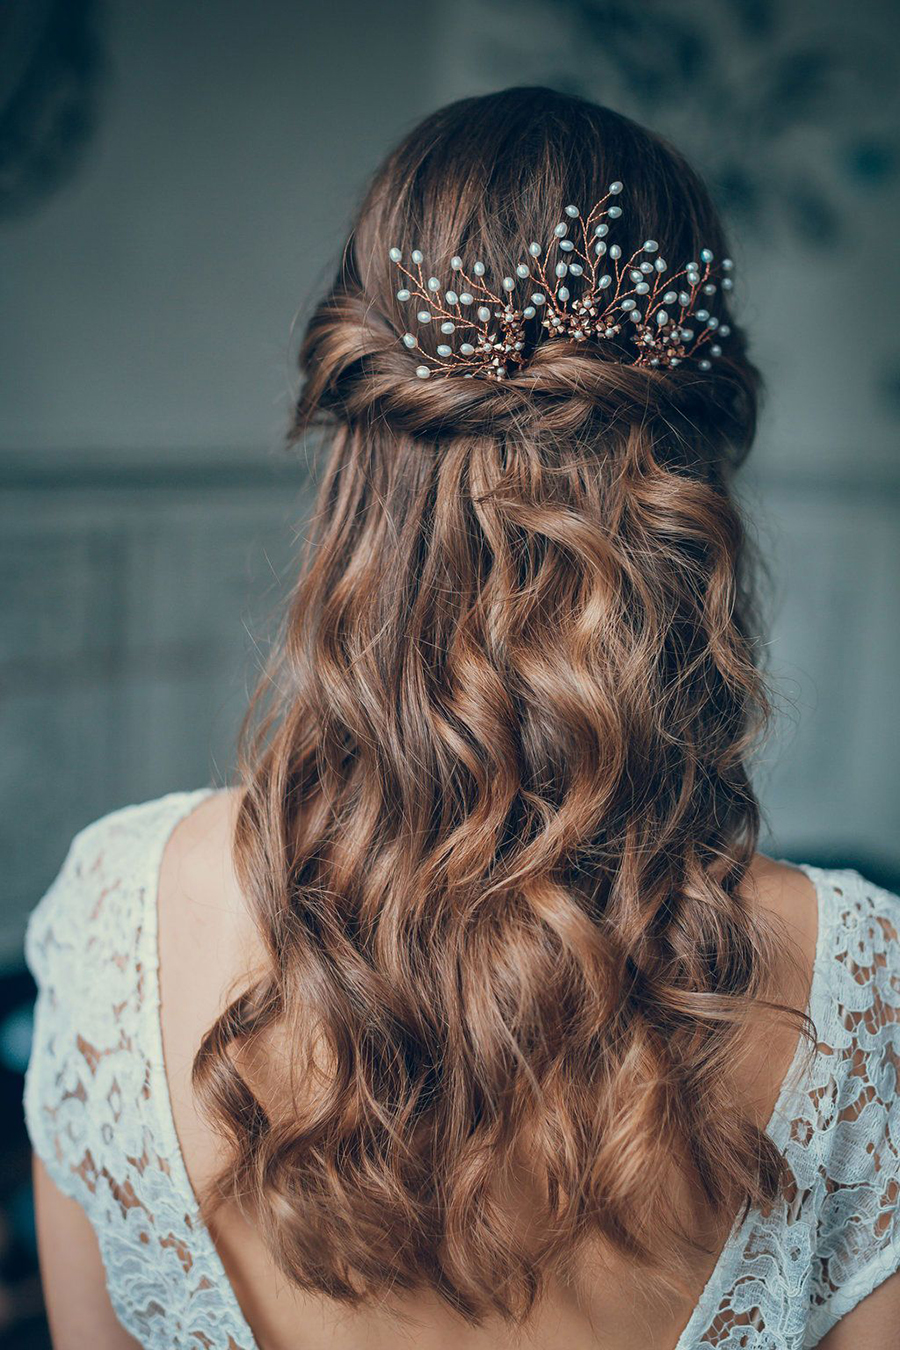 Bạn muốn tóc cô dâu của mình đơn giản mà vẫn đẹp như mơ? Hãy xem hình để tìm những gợi ý về kiểu tóc đơn giản nhưng không kém phần quyến rũ để bạn tự tin lộng lẫy trong lễ cưới.